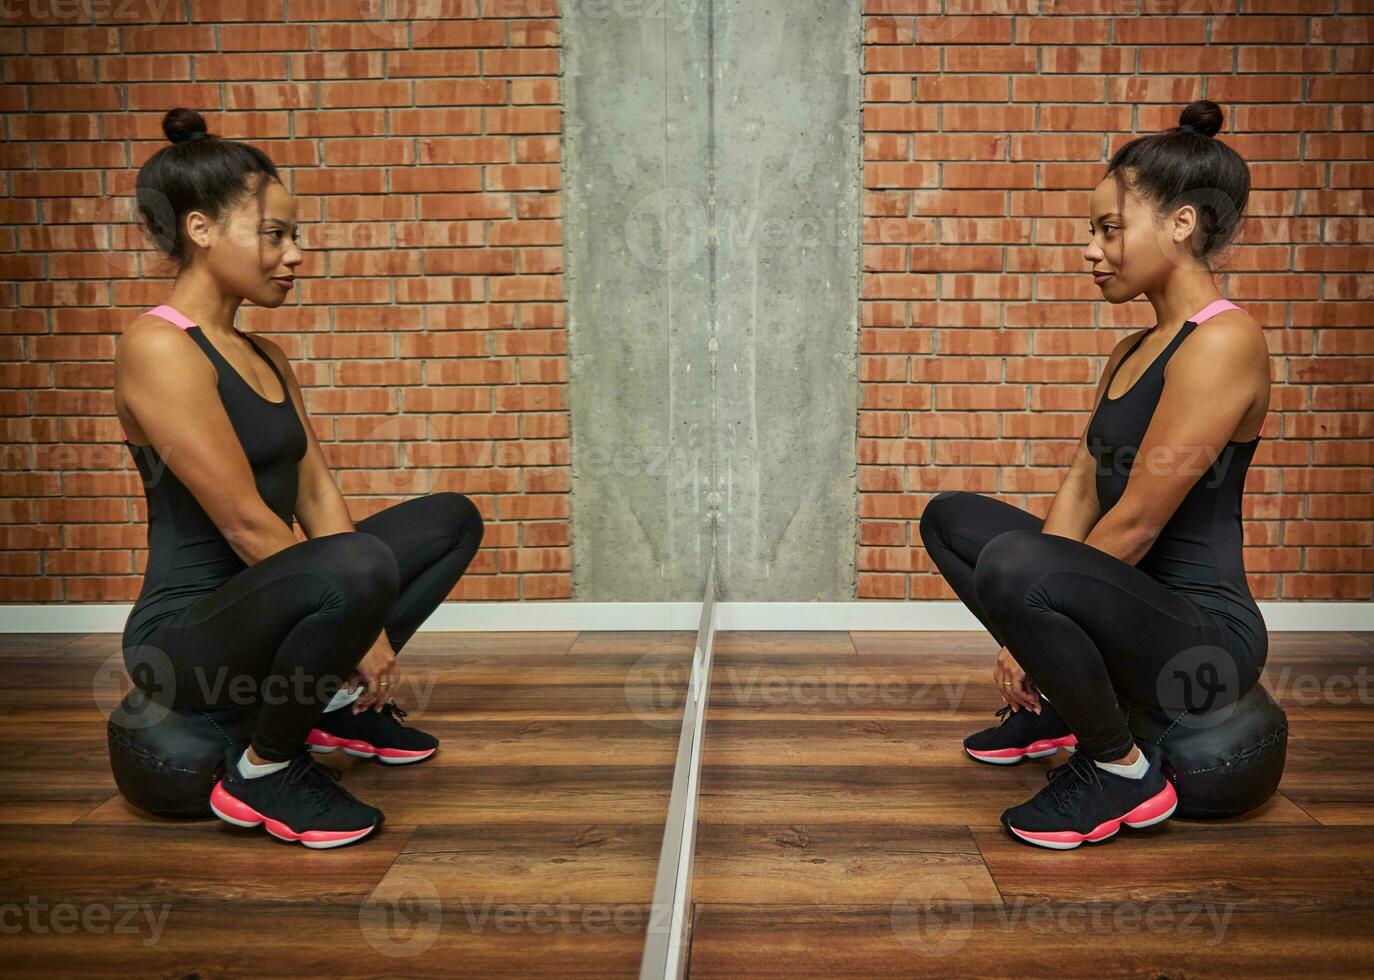 porträtt av en skön sportig idrottare afrikansk kvinna i svart sportkläder ser på henne spegel reflexion, Sammanträde på en medicin kondition boll mot röd tegelstenar vägg bakgrund av en Gym klass foto